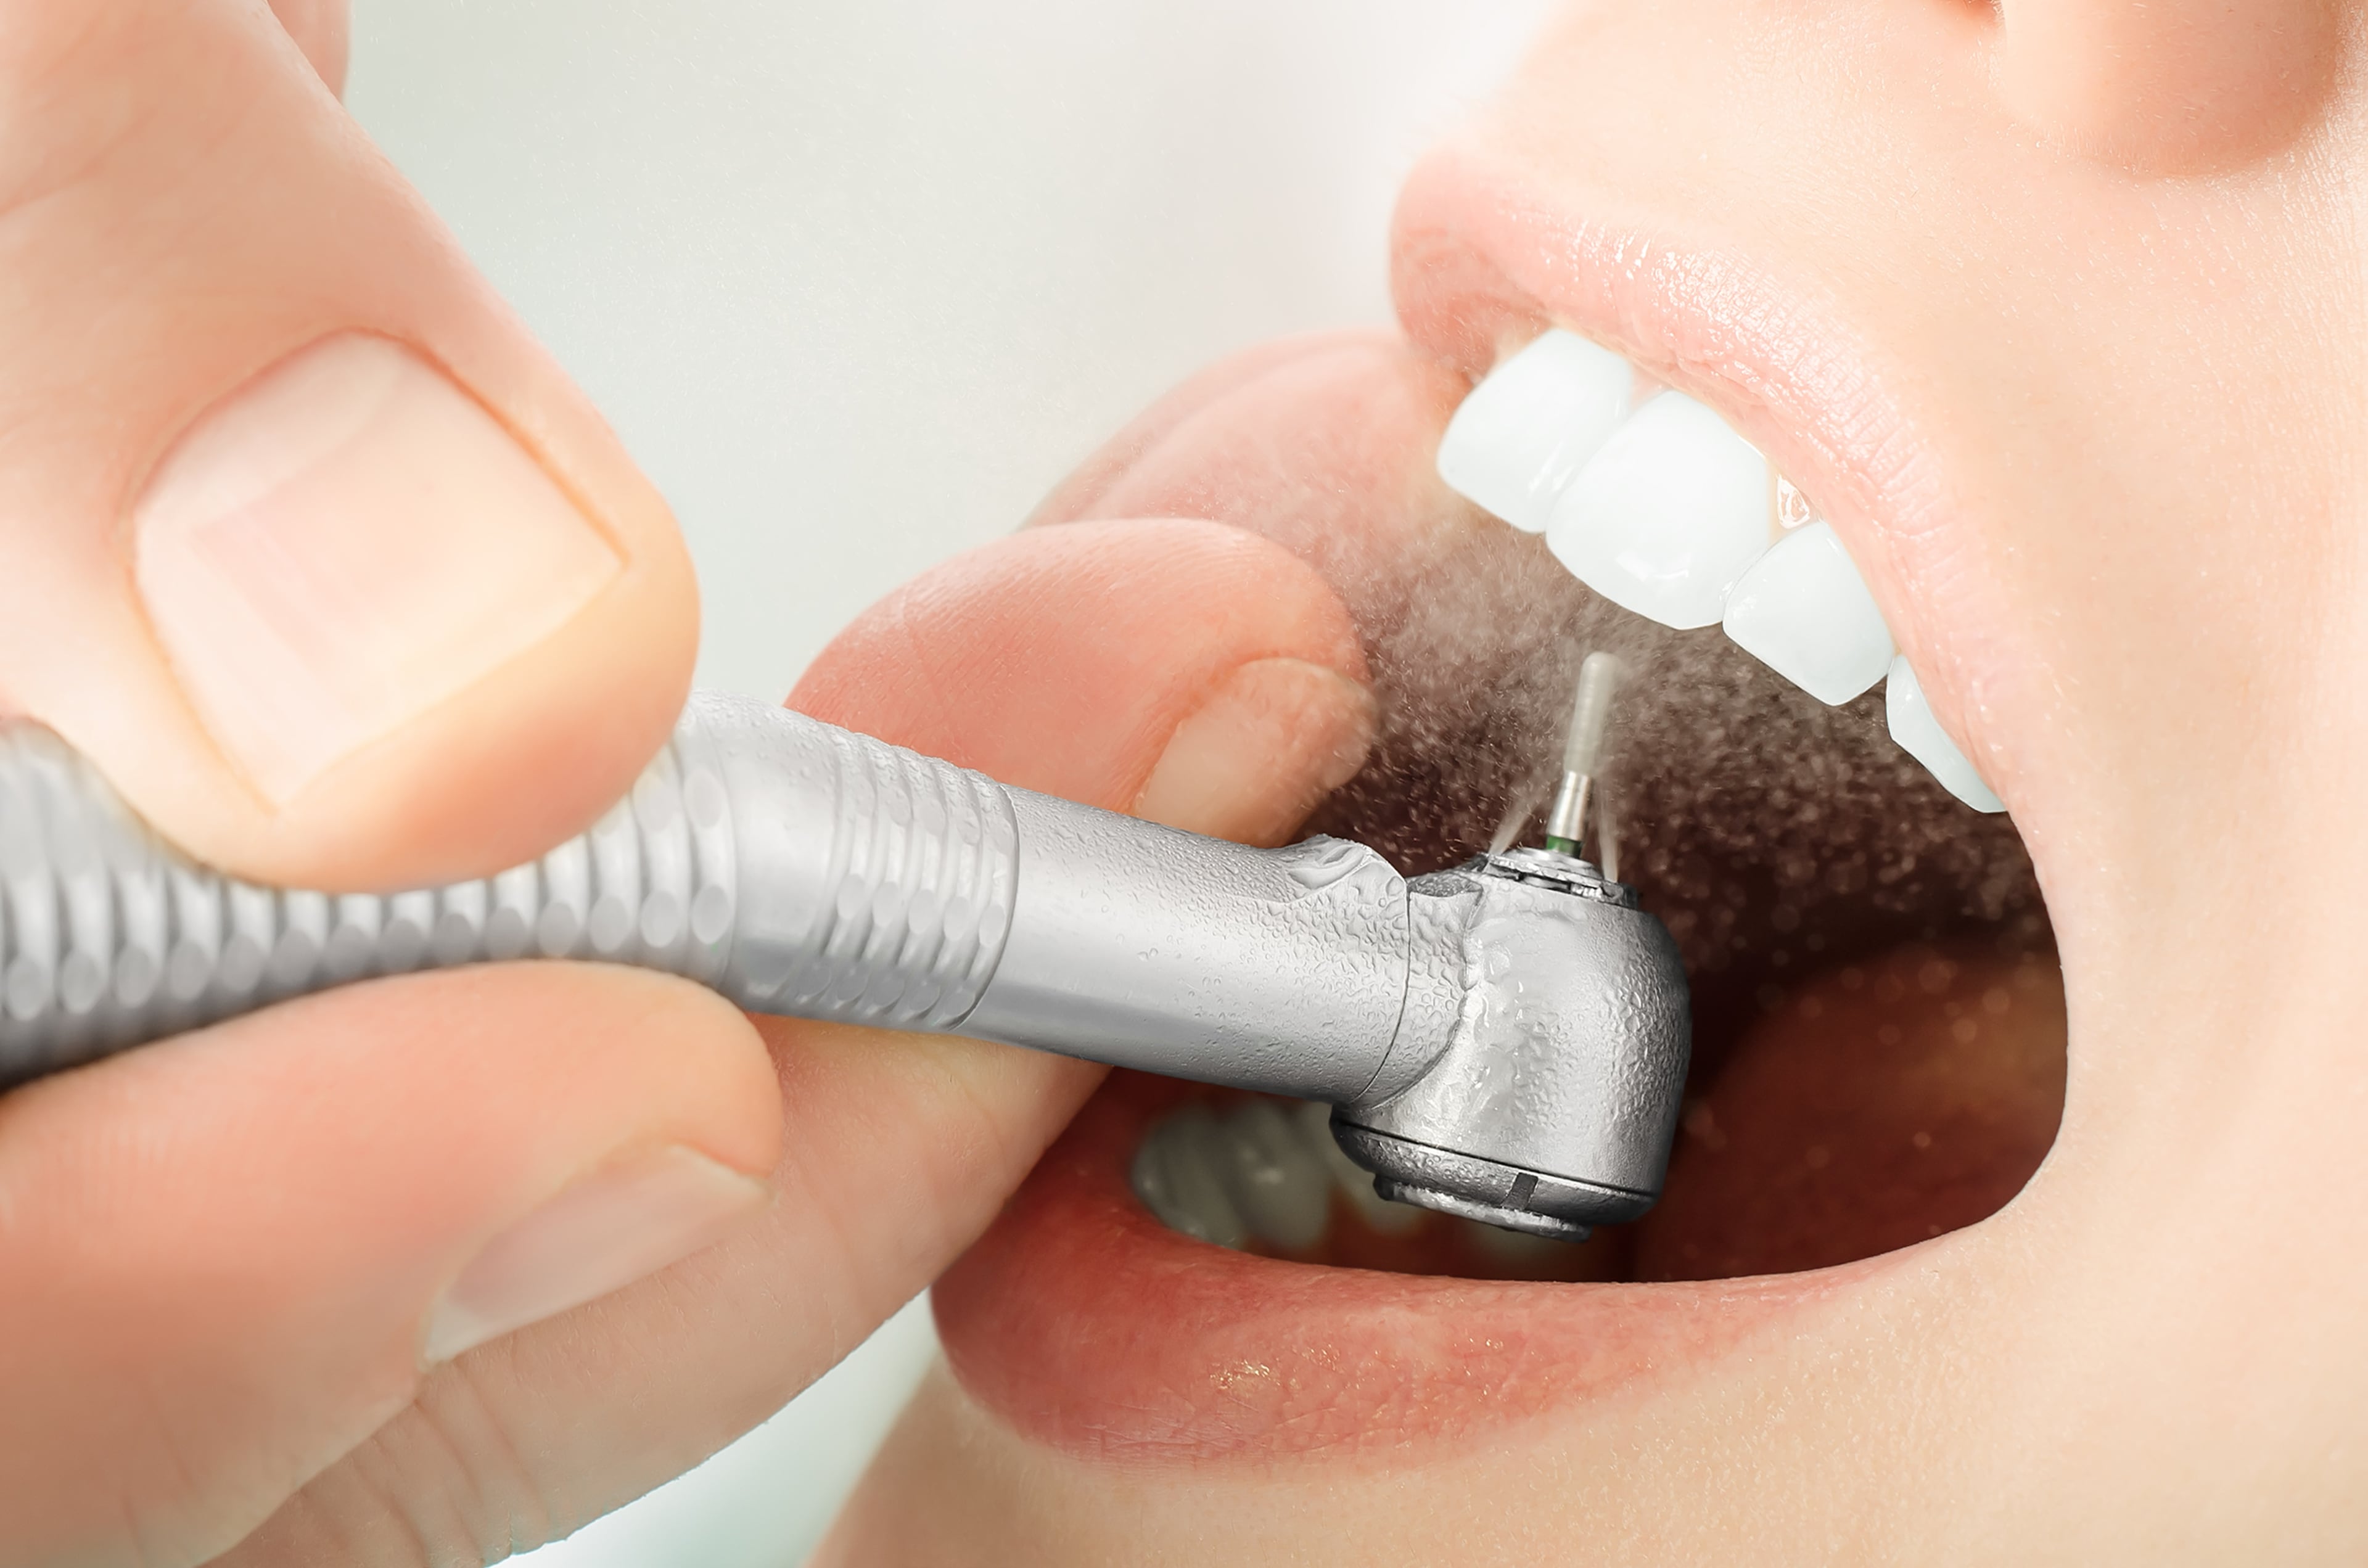 Чистка зуб г. Аппарат АИР флоу стоматология. Профессиональная гигиена полости рта.